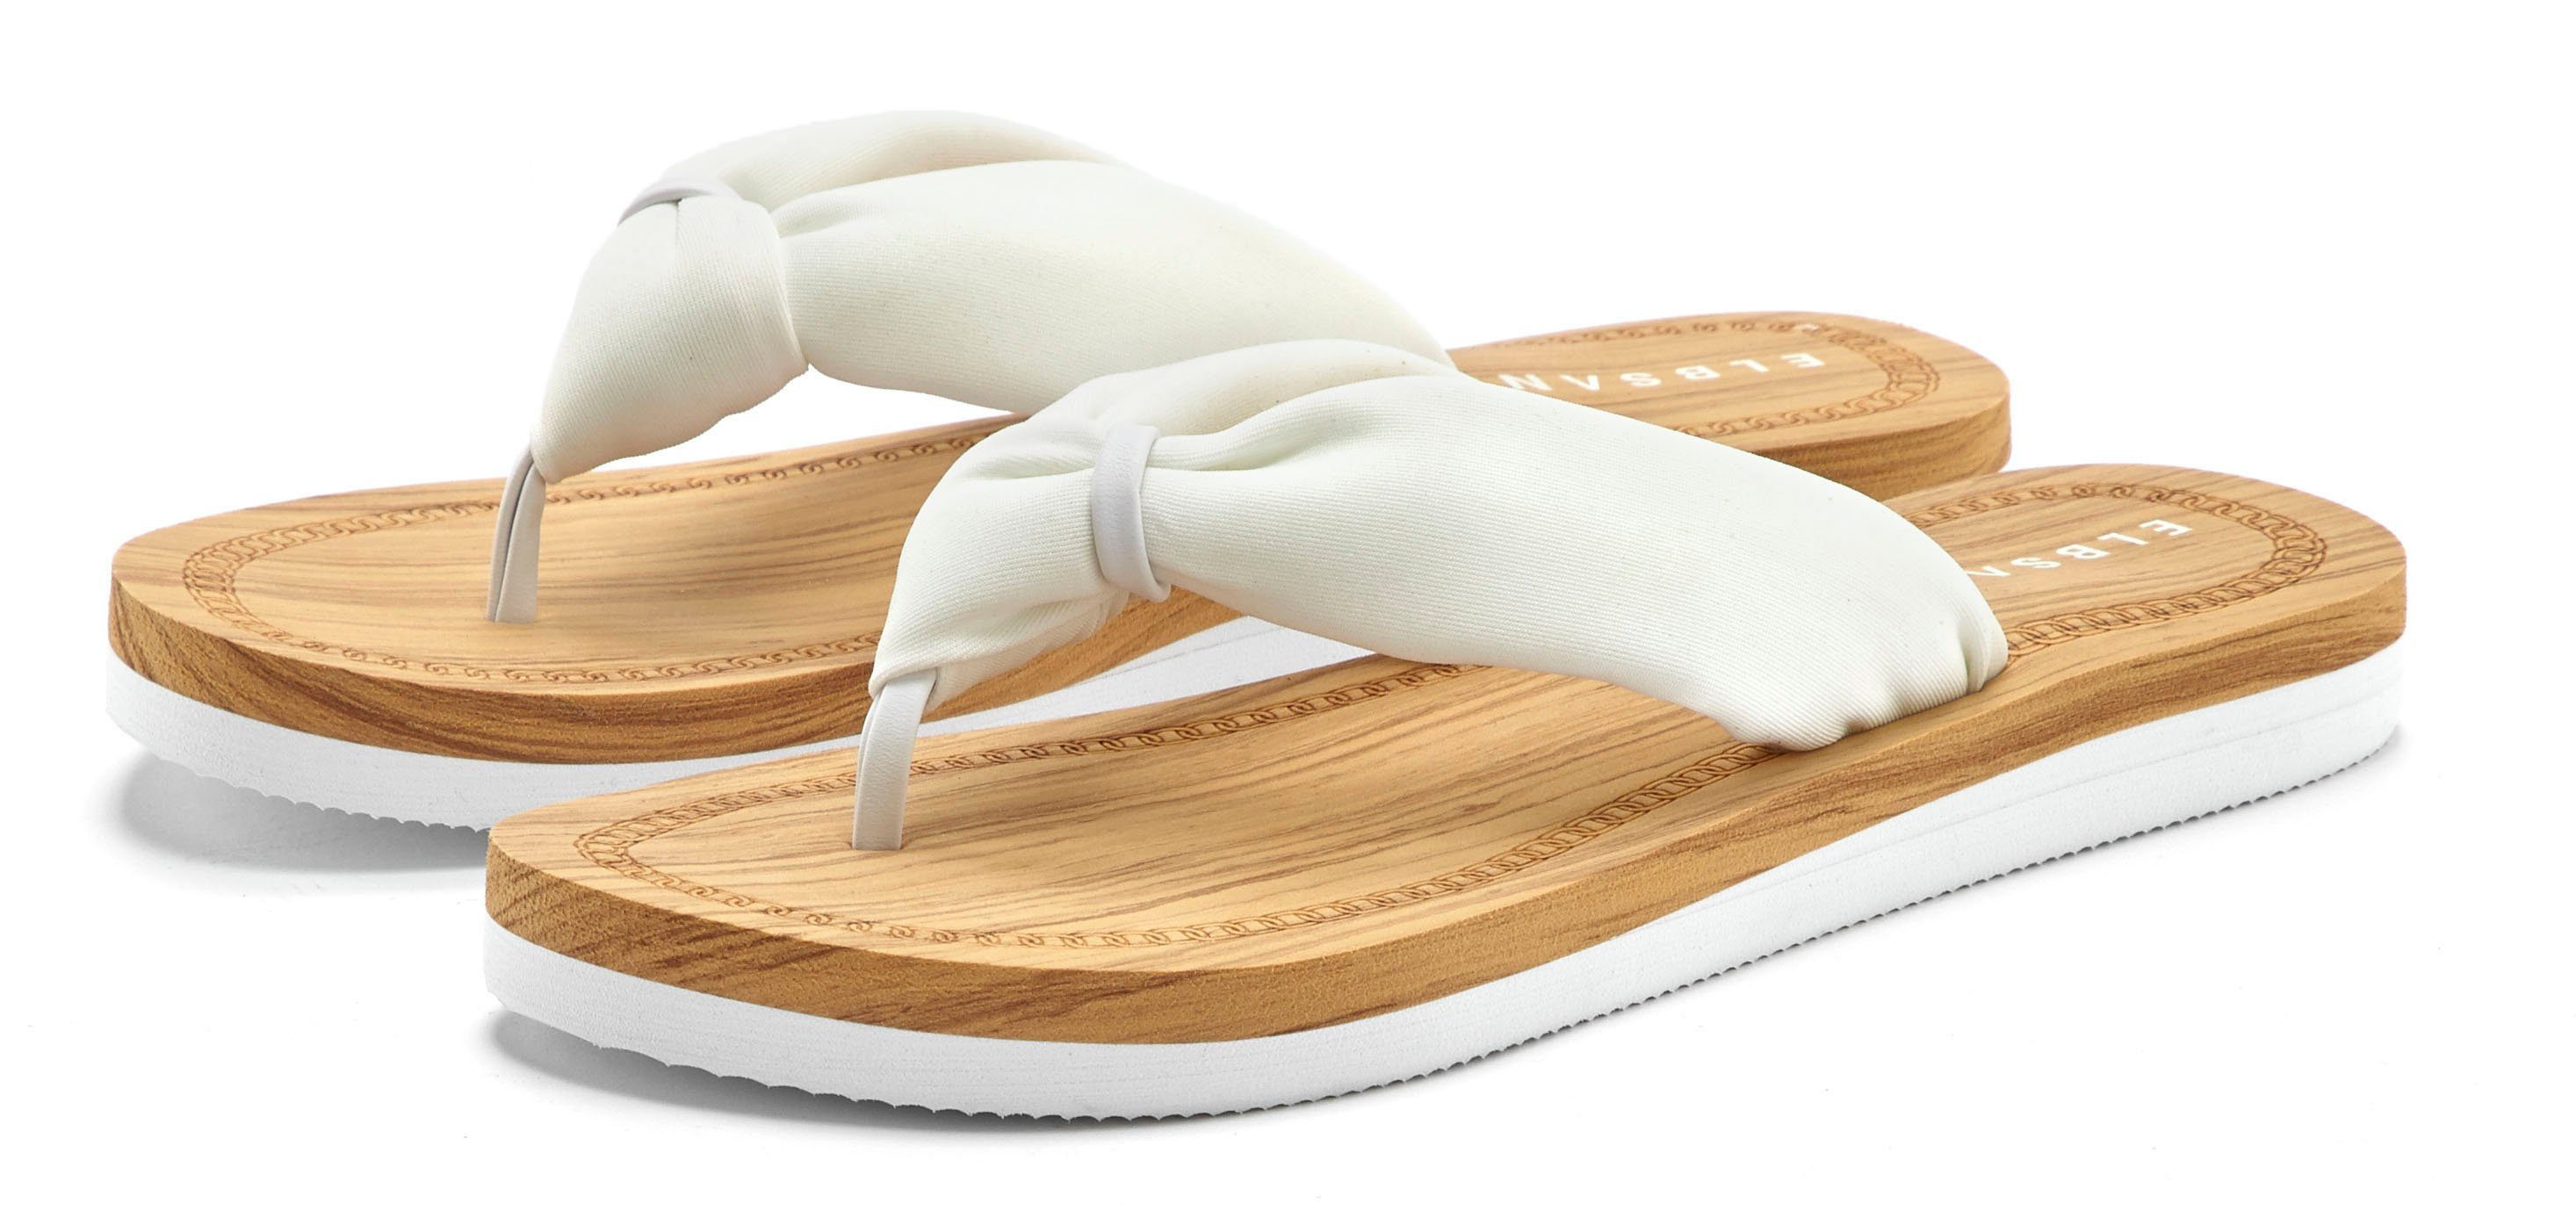 Elbsand Badezehentrenner Sandale, Pantolette, ultraleicht Badeschuh VEGAN weiß